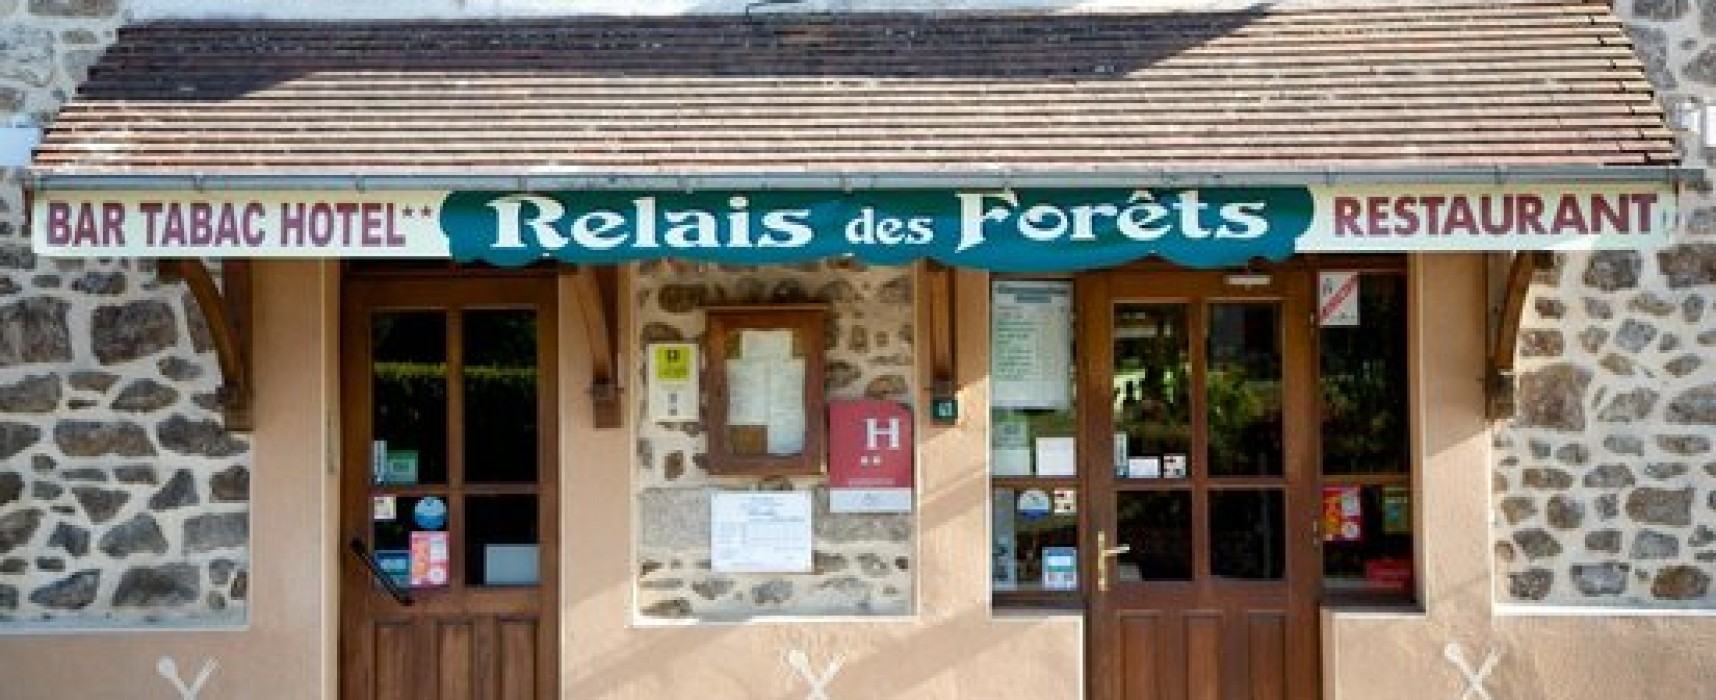 « Le Relais des Forêts » à Blessac ré-ouvre ses portes